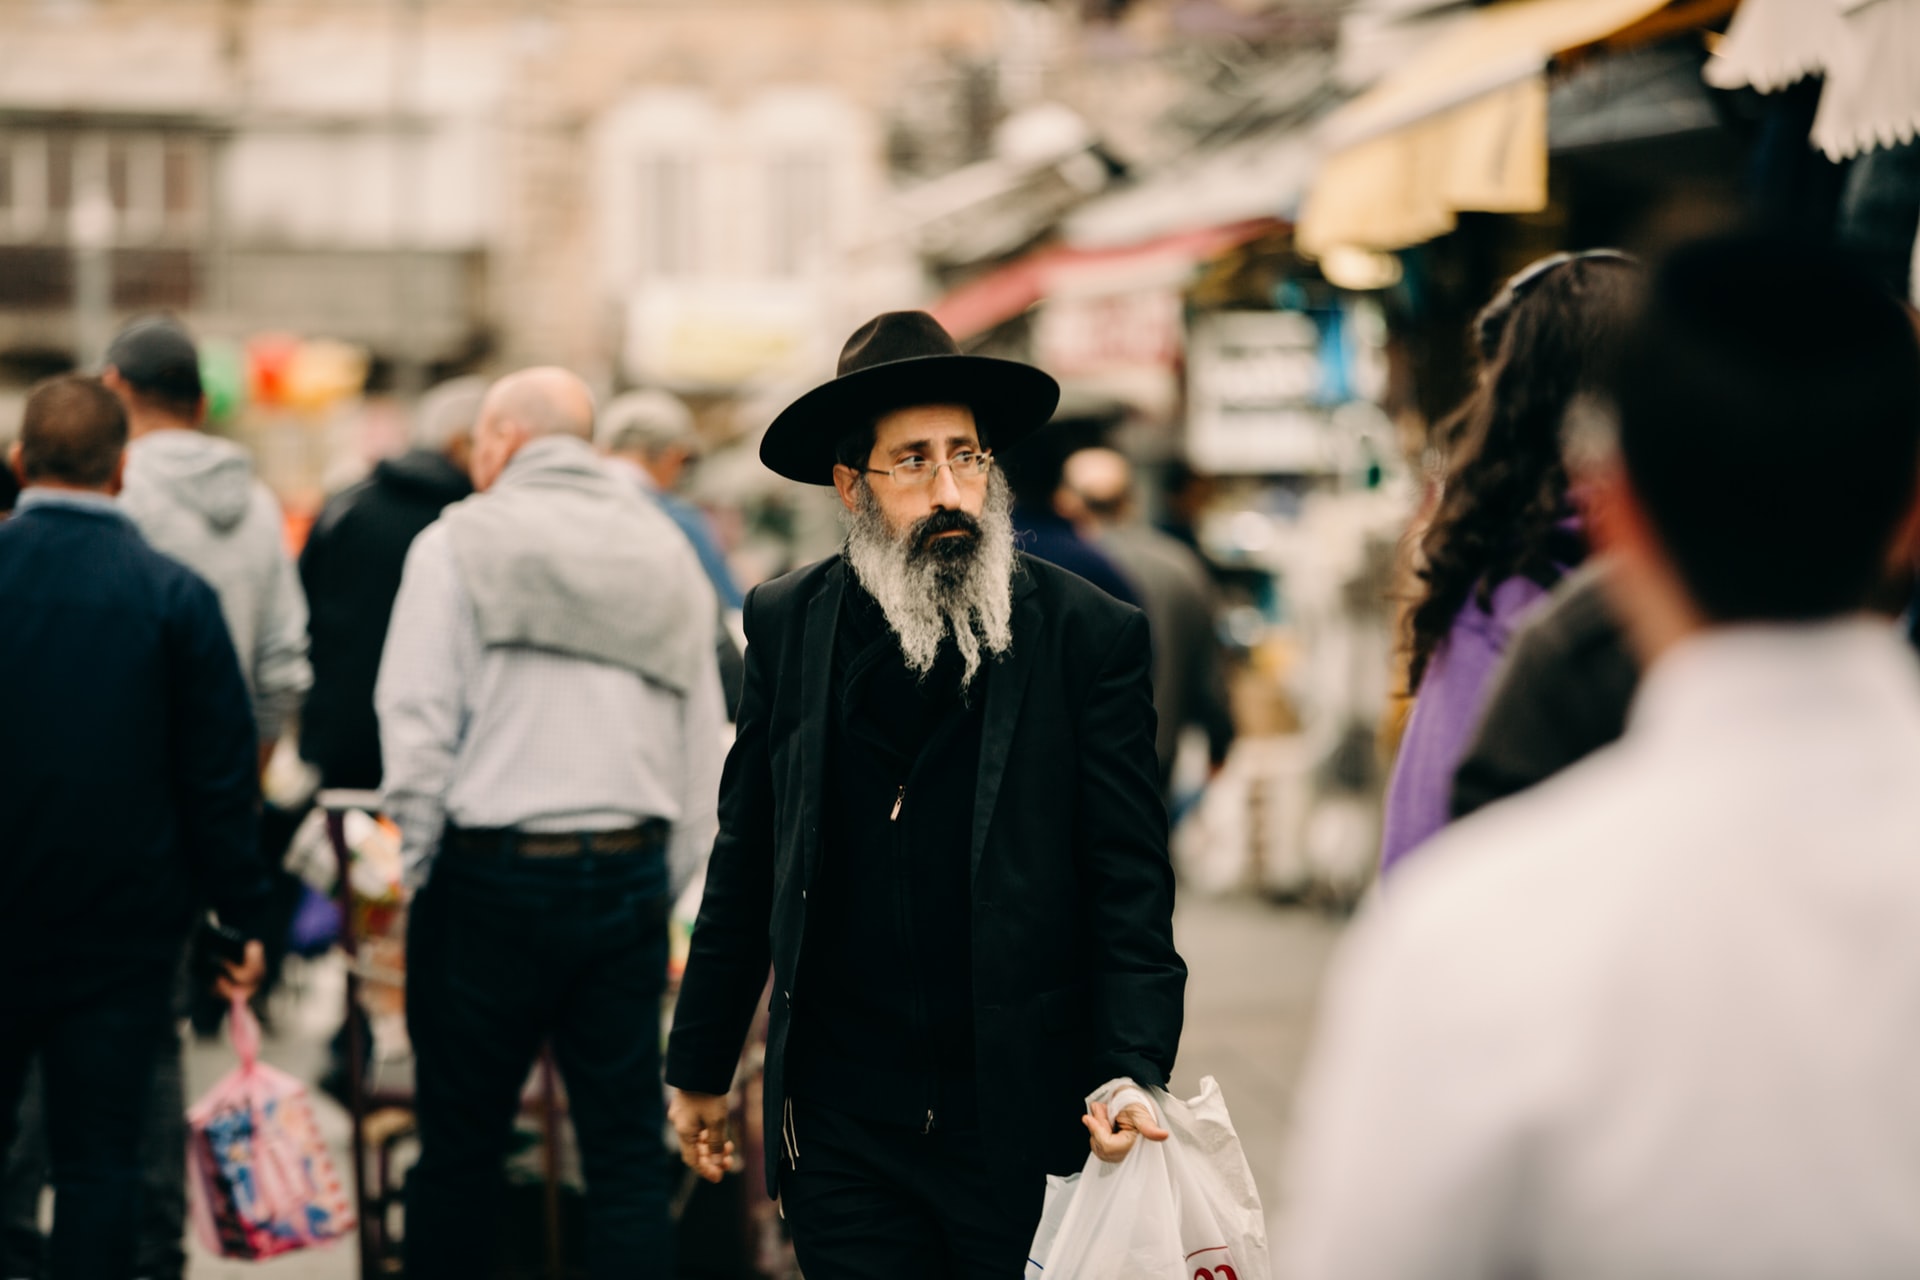 Várias pessoas caminhando nas ruas de Jerusalém, perto do mercado Mahne Yehuda Shuk, em foco um judeu ortodoxo vestido em roupas pretas segurando algumas sacolas nas mãos.